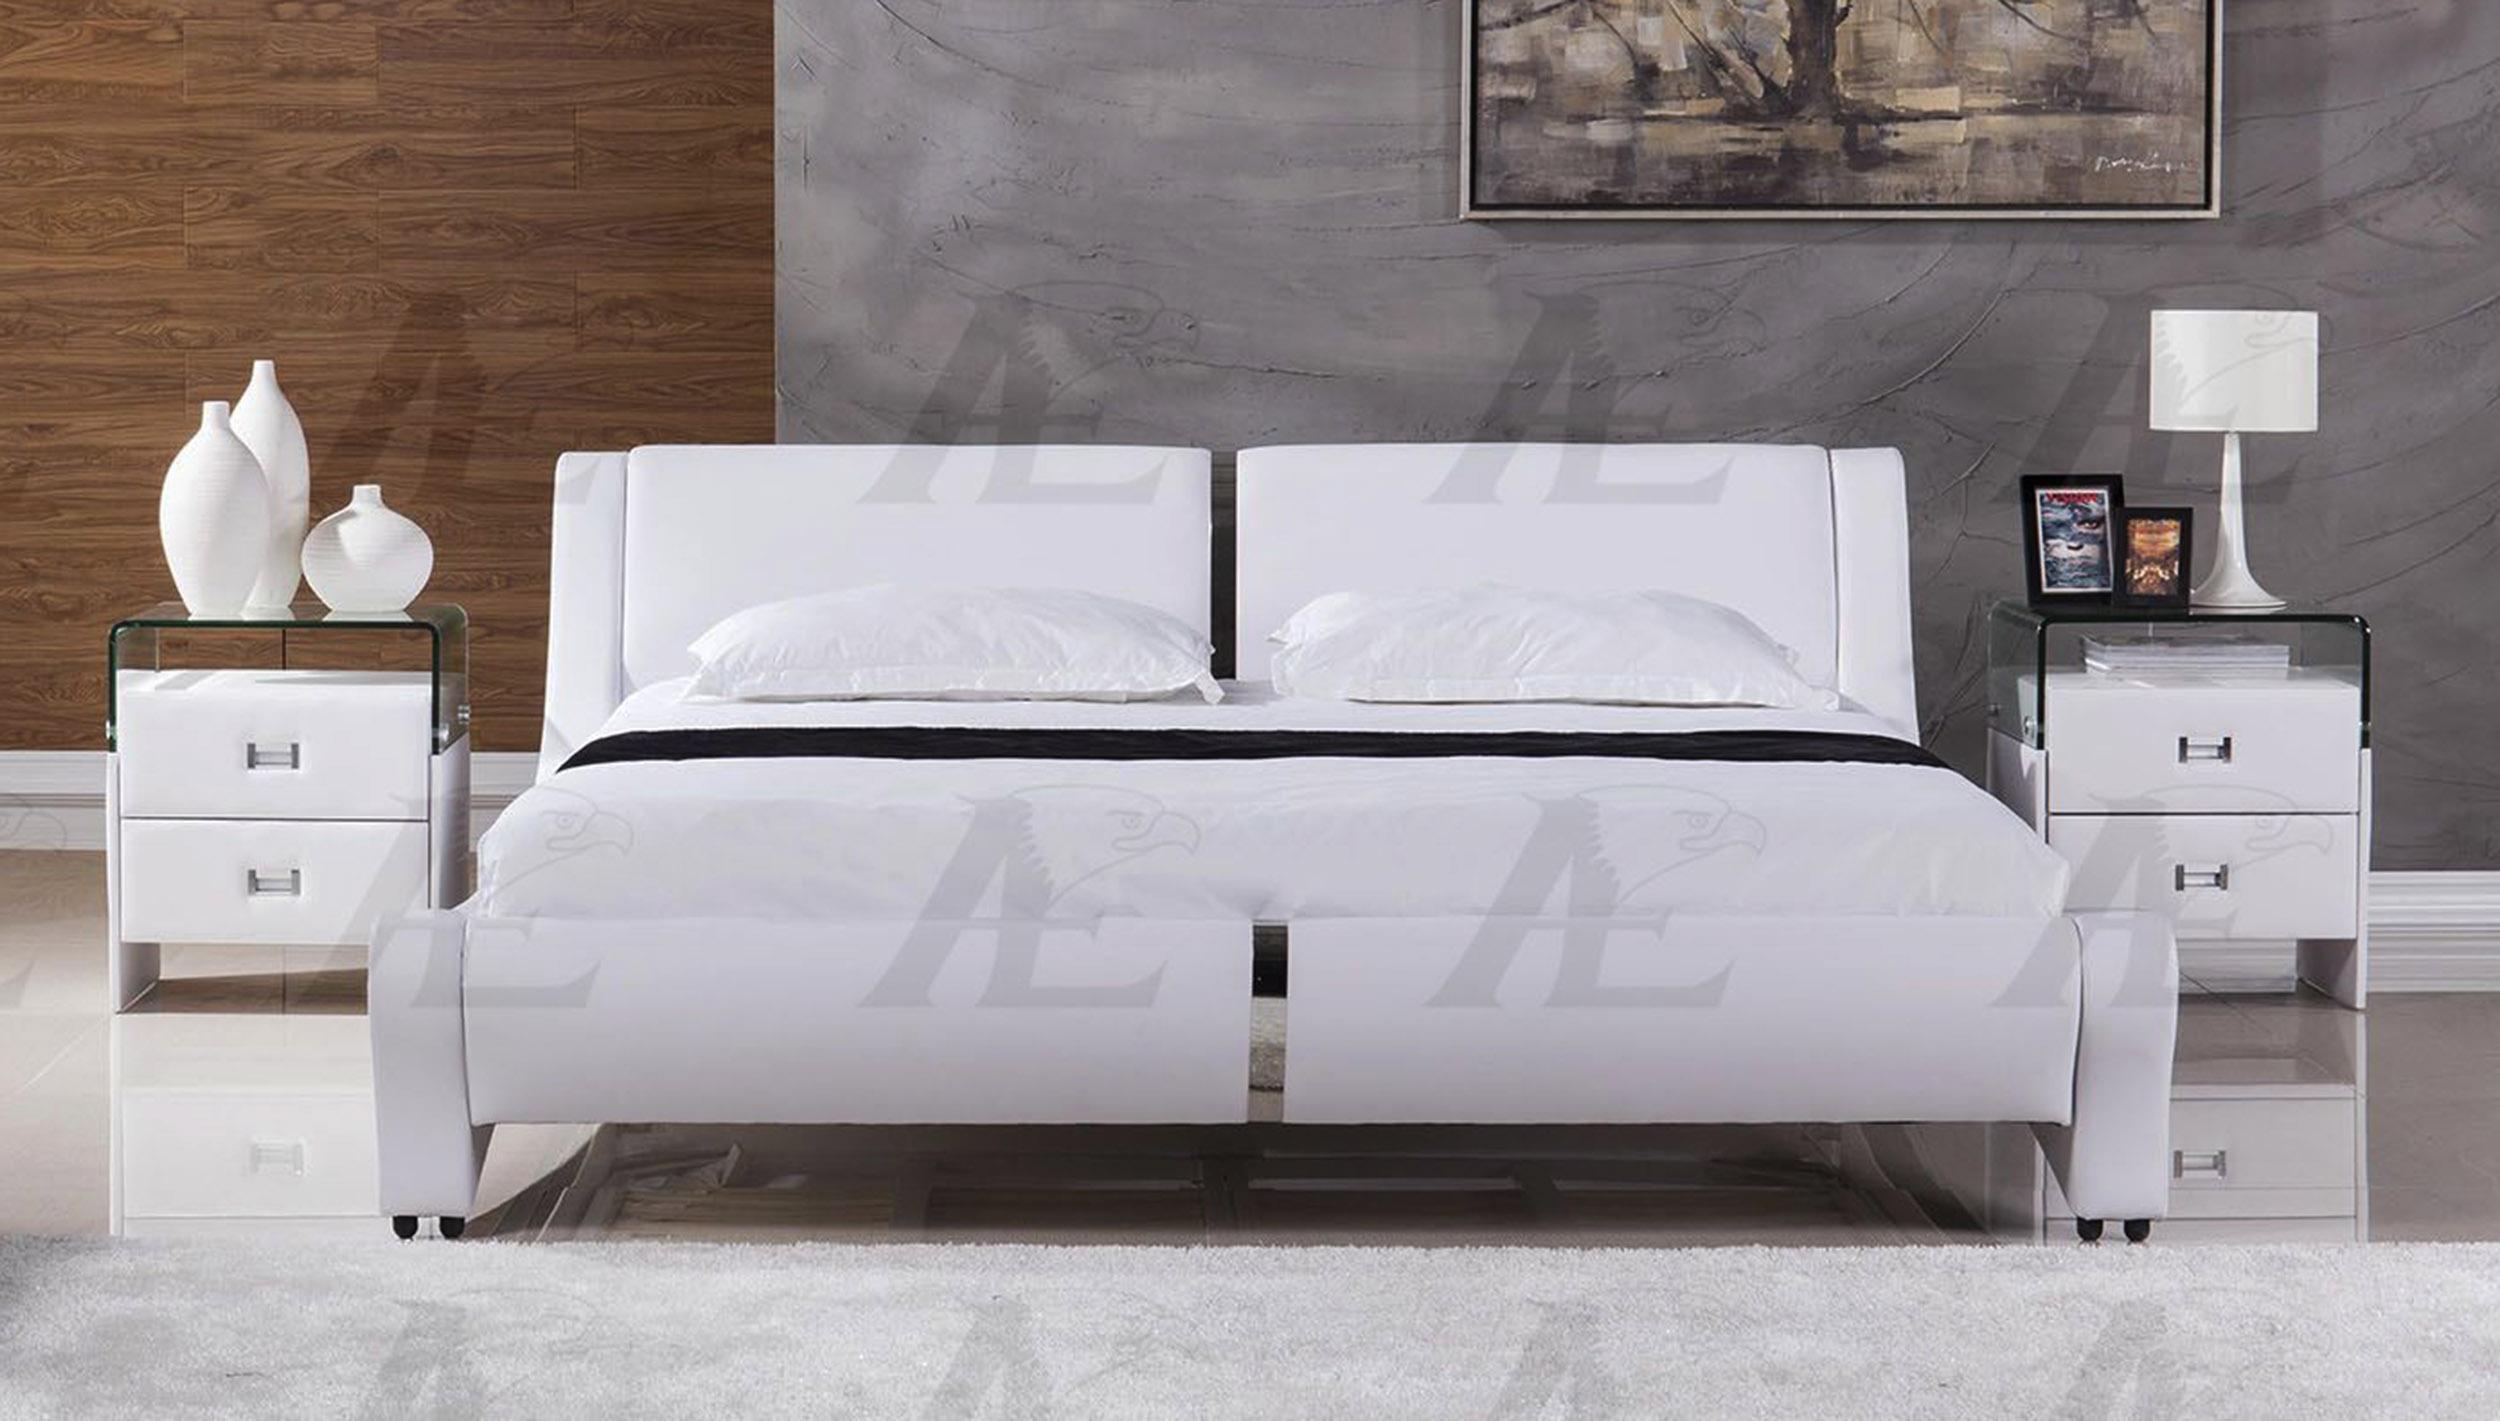 

                    
American Eagle Furniture AE B-D039-EK Platform Bed White PU Purchase 
